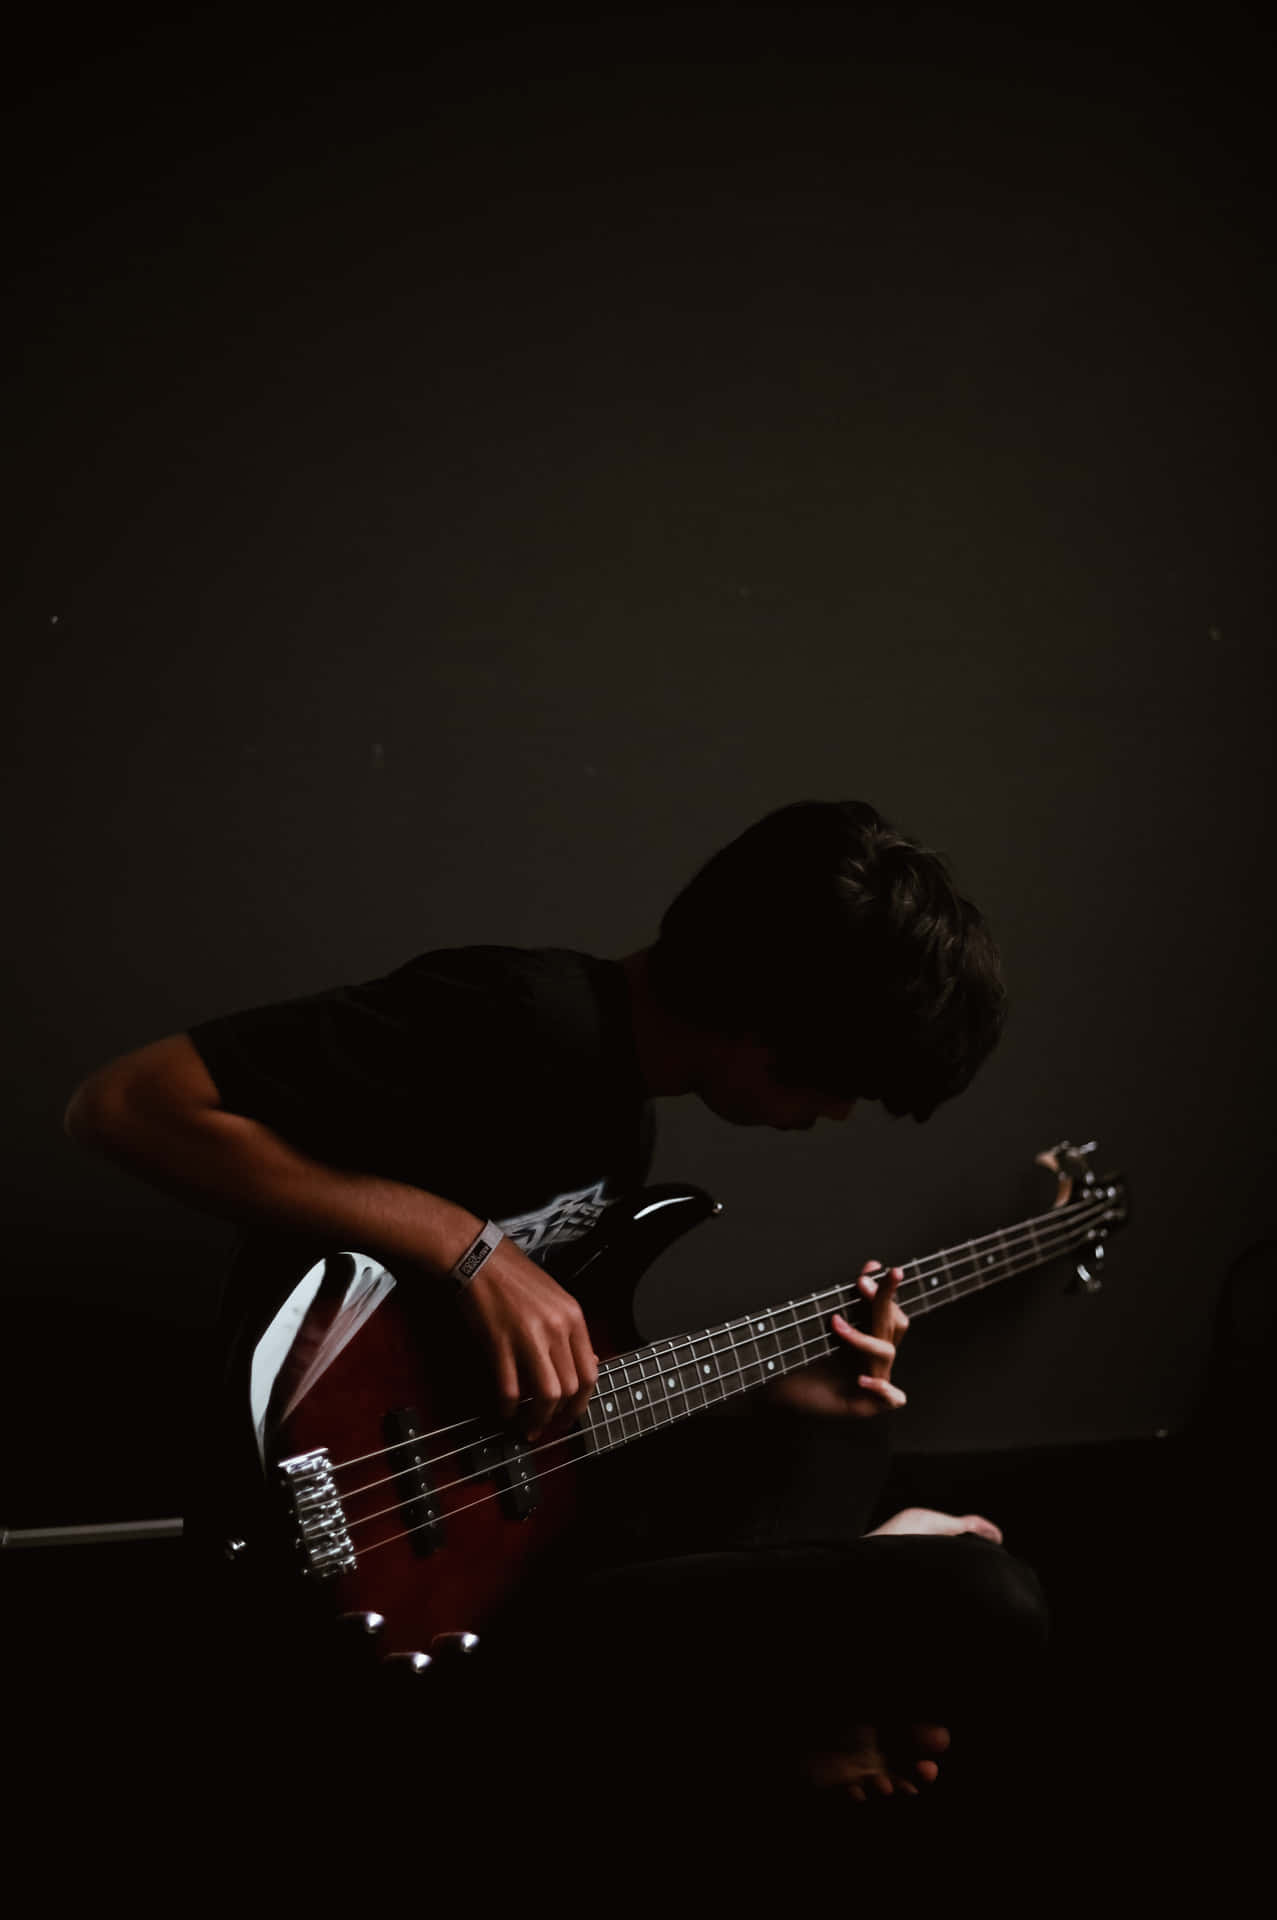 Bass Guitar Wallpapers - Top Free Bass Guitar Backgrounds - WallpaperAccess